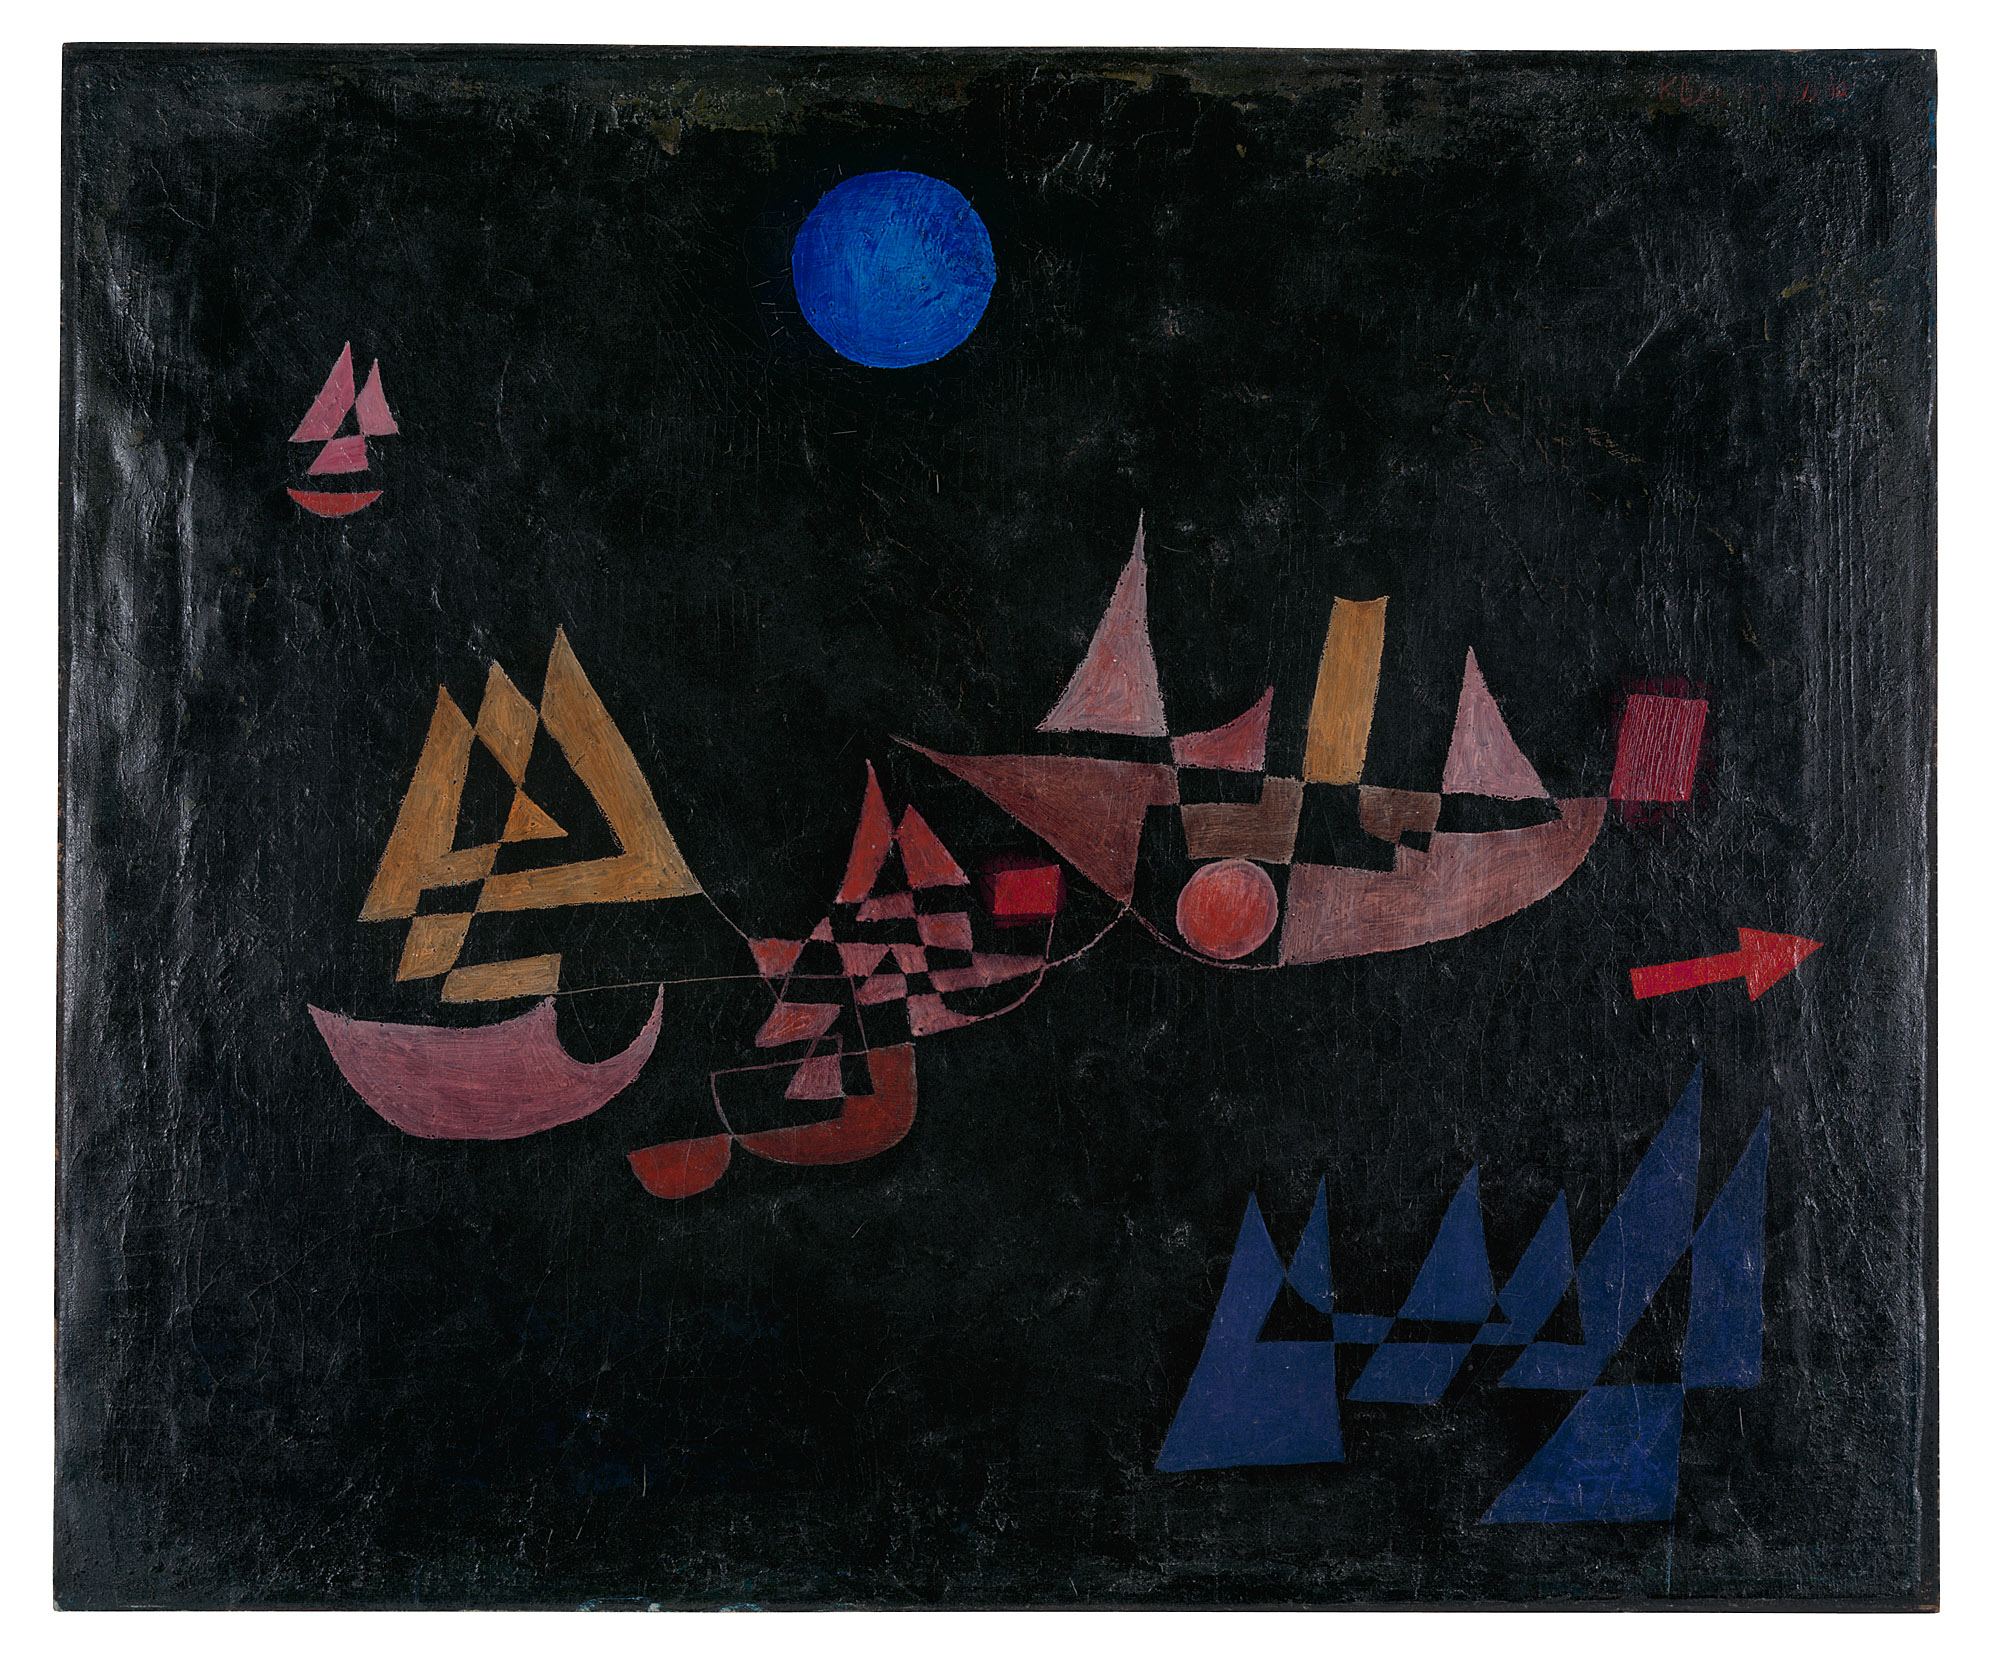 La partida de los barcos by Paul Klee - 1927 Zentrum Paul Klee